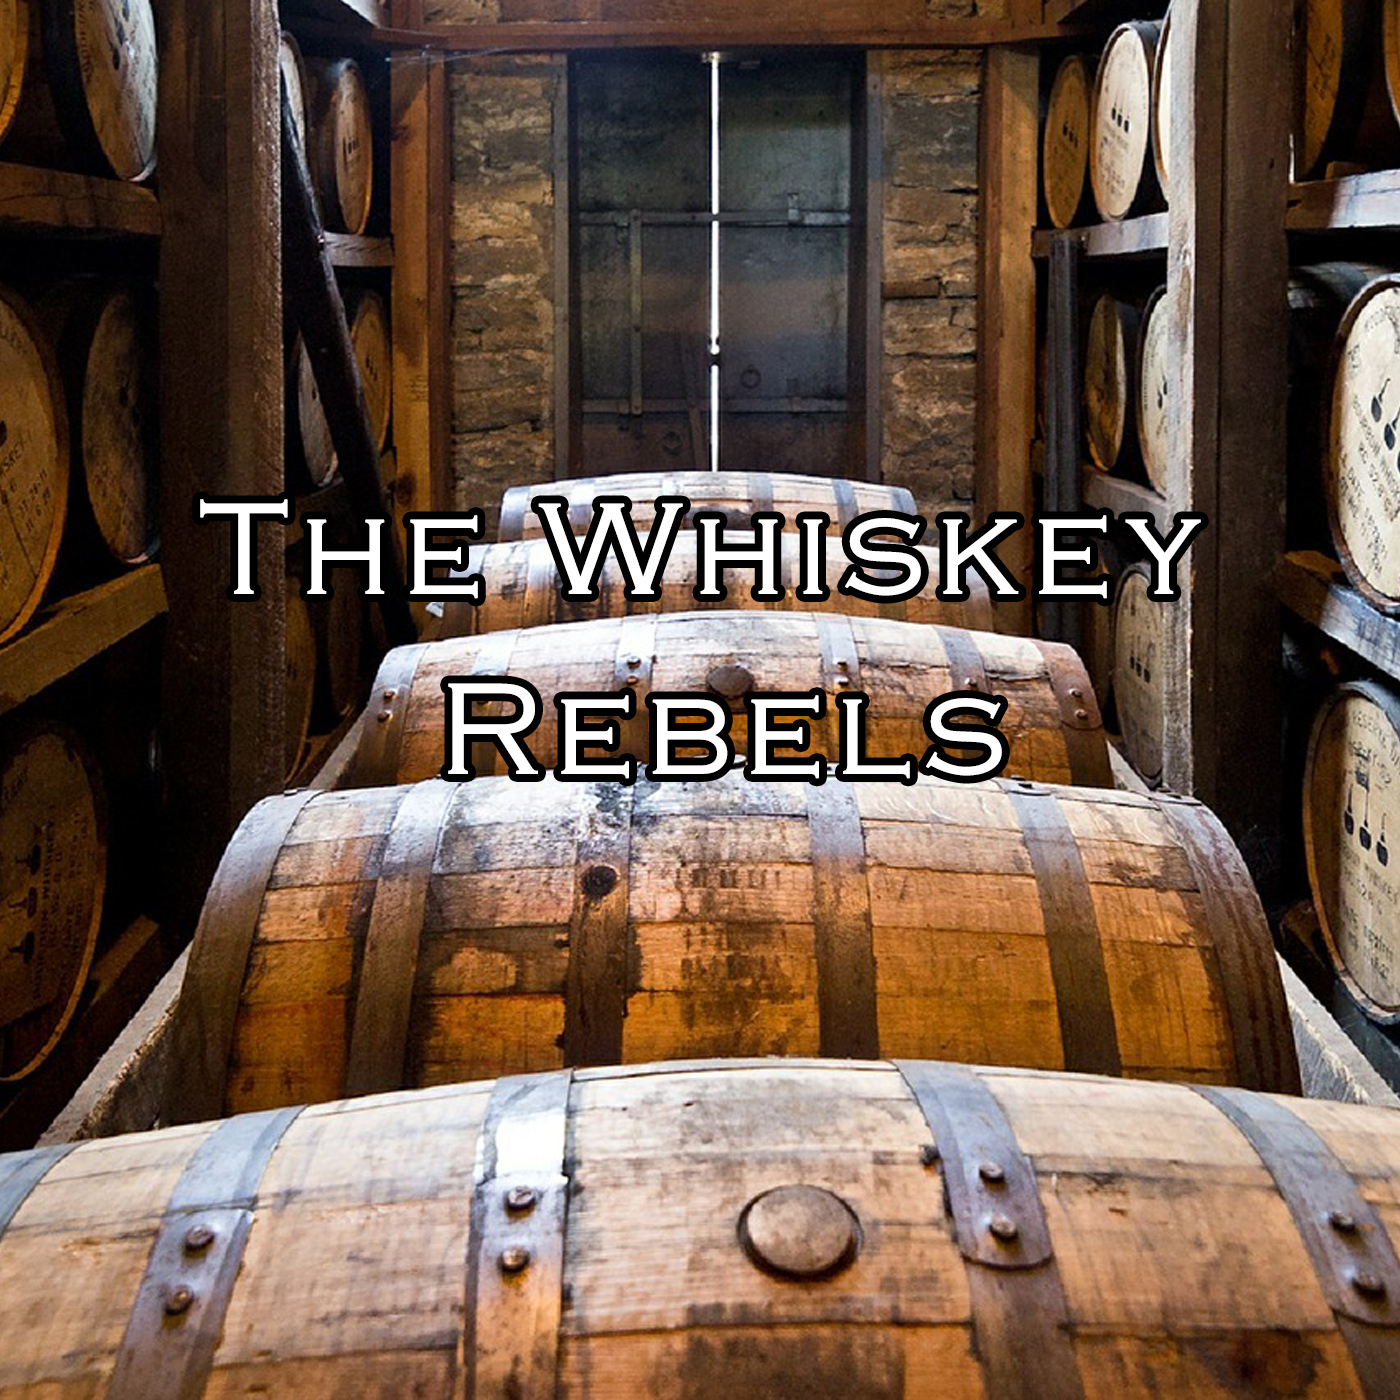 #1: The Whiskey Rebellion